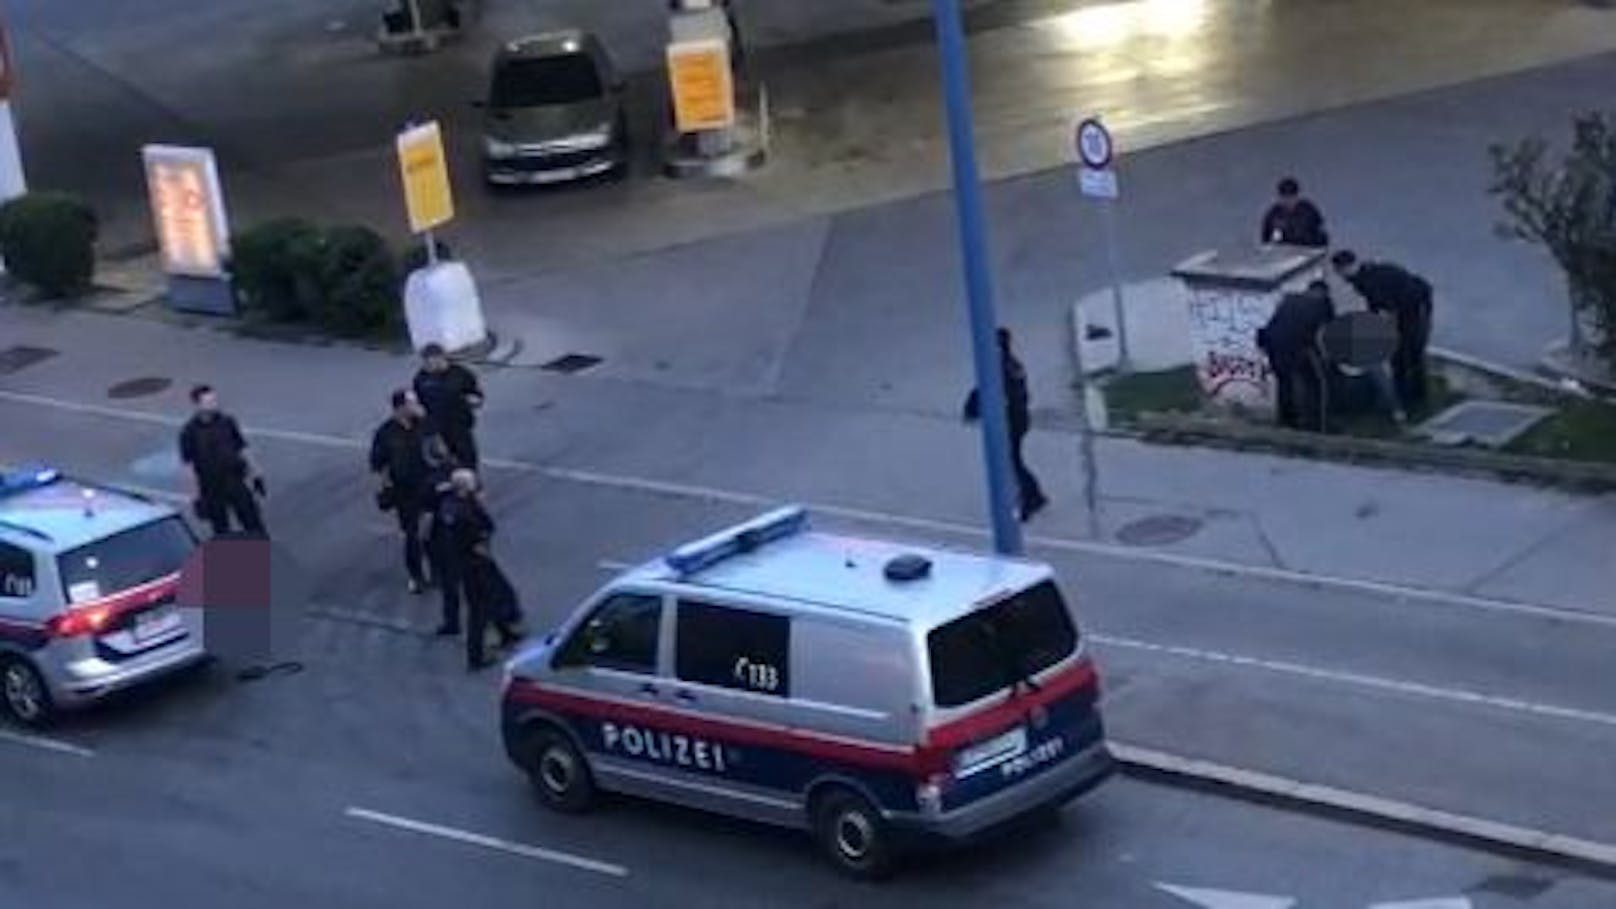 Wiener zu laut – Polizeieinsatz eskaliert komplett